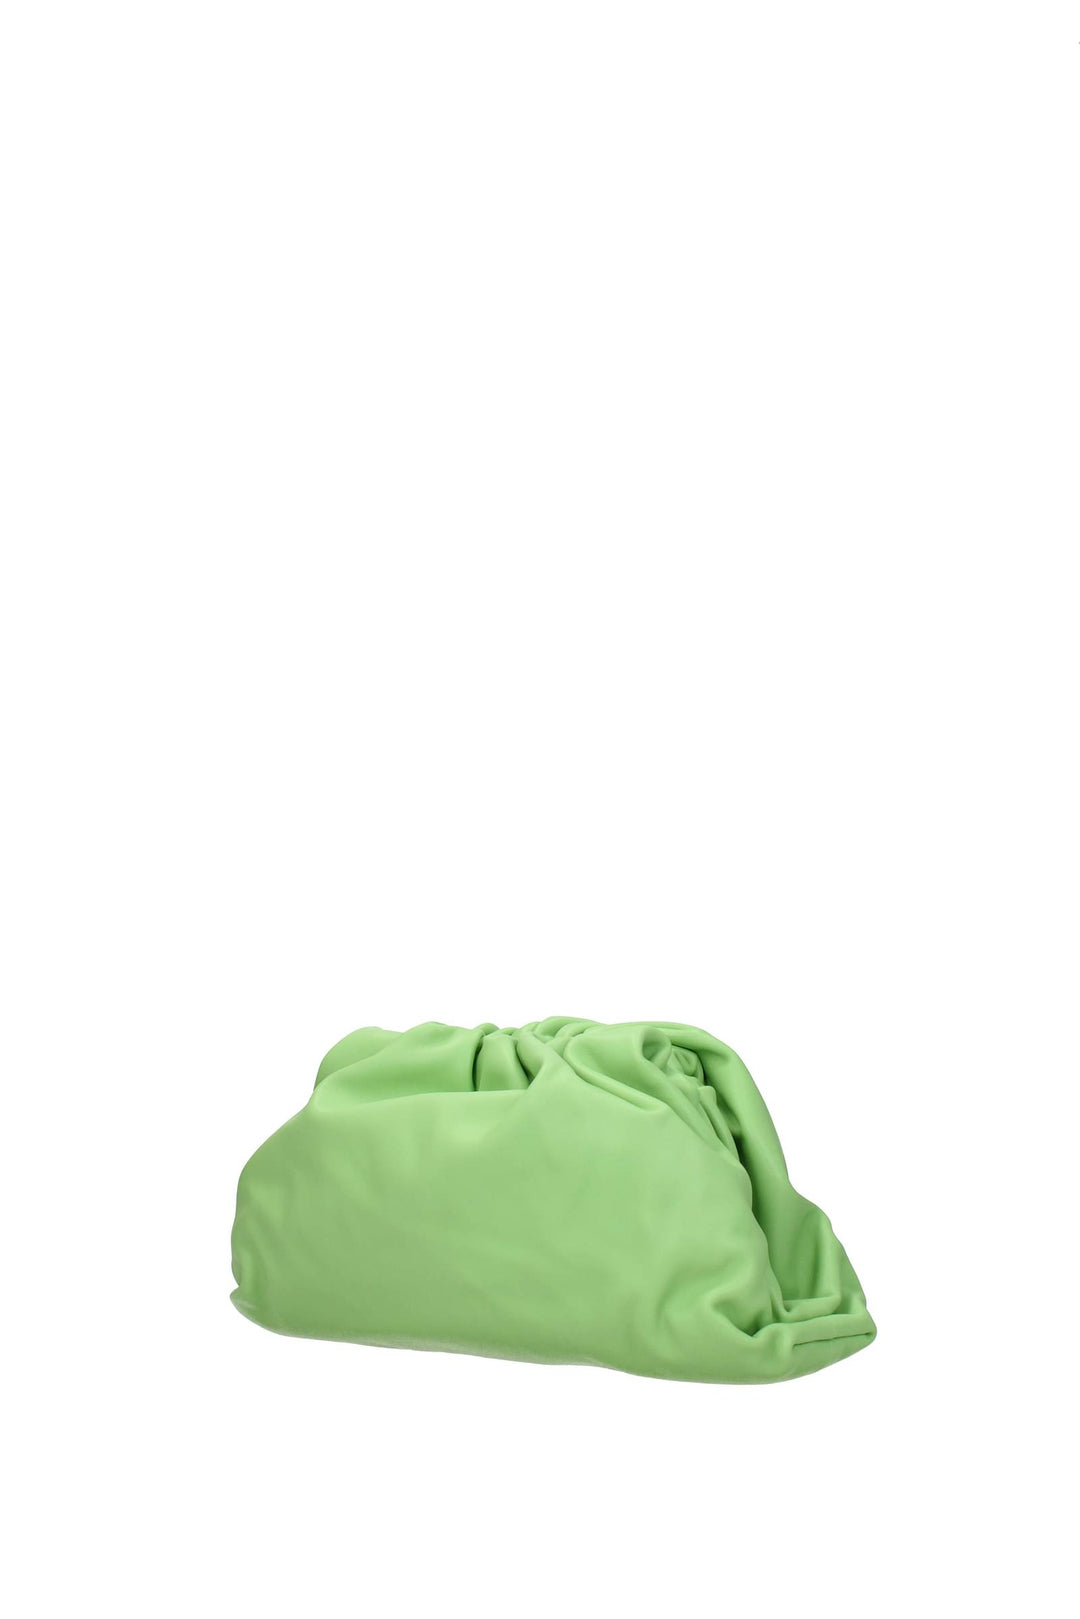 Pochette Pelle Verde Pistacchio - Bottega Veneta - Donna